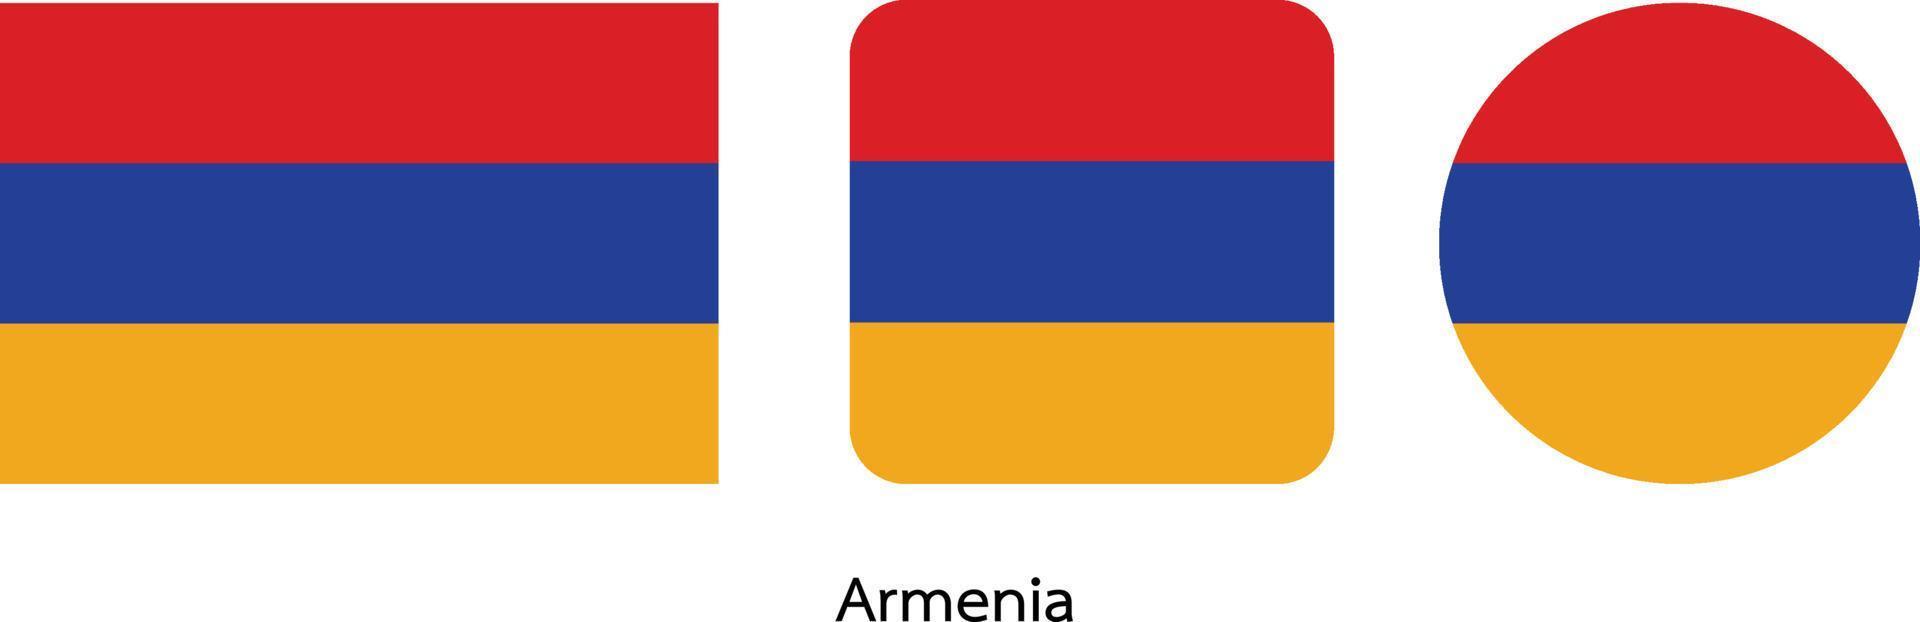 drapeau arménien, illustration vectorielle vecteur